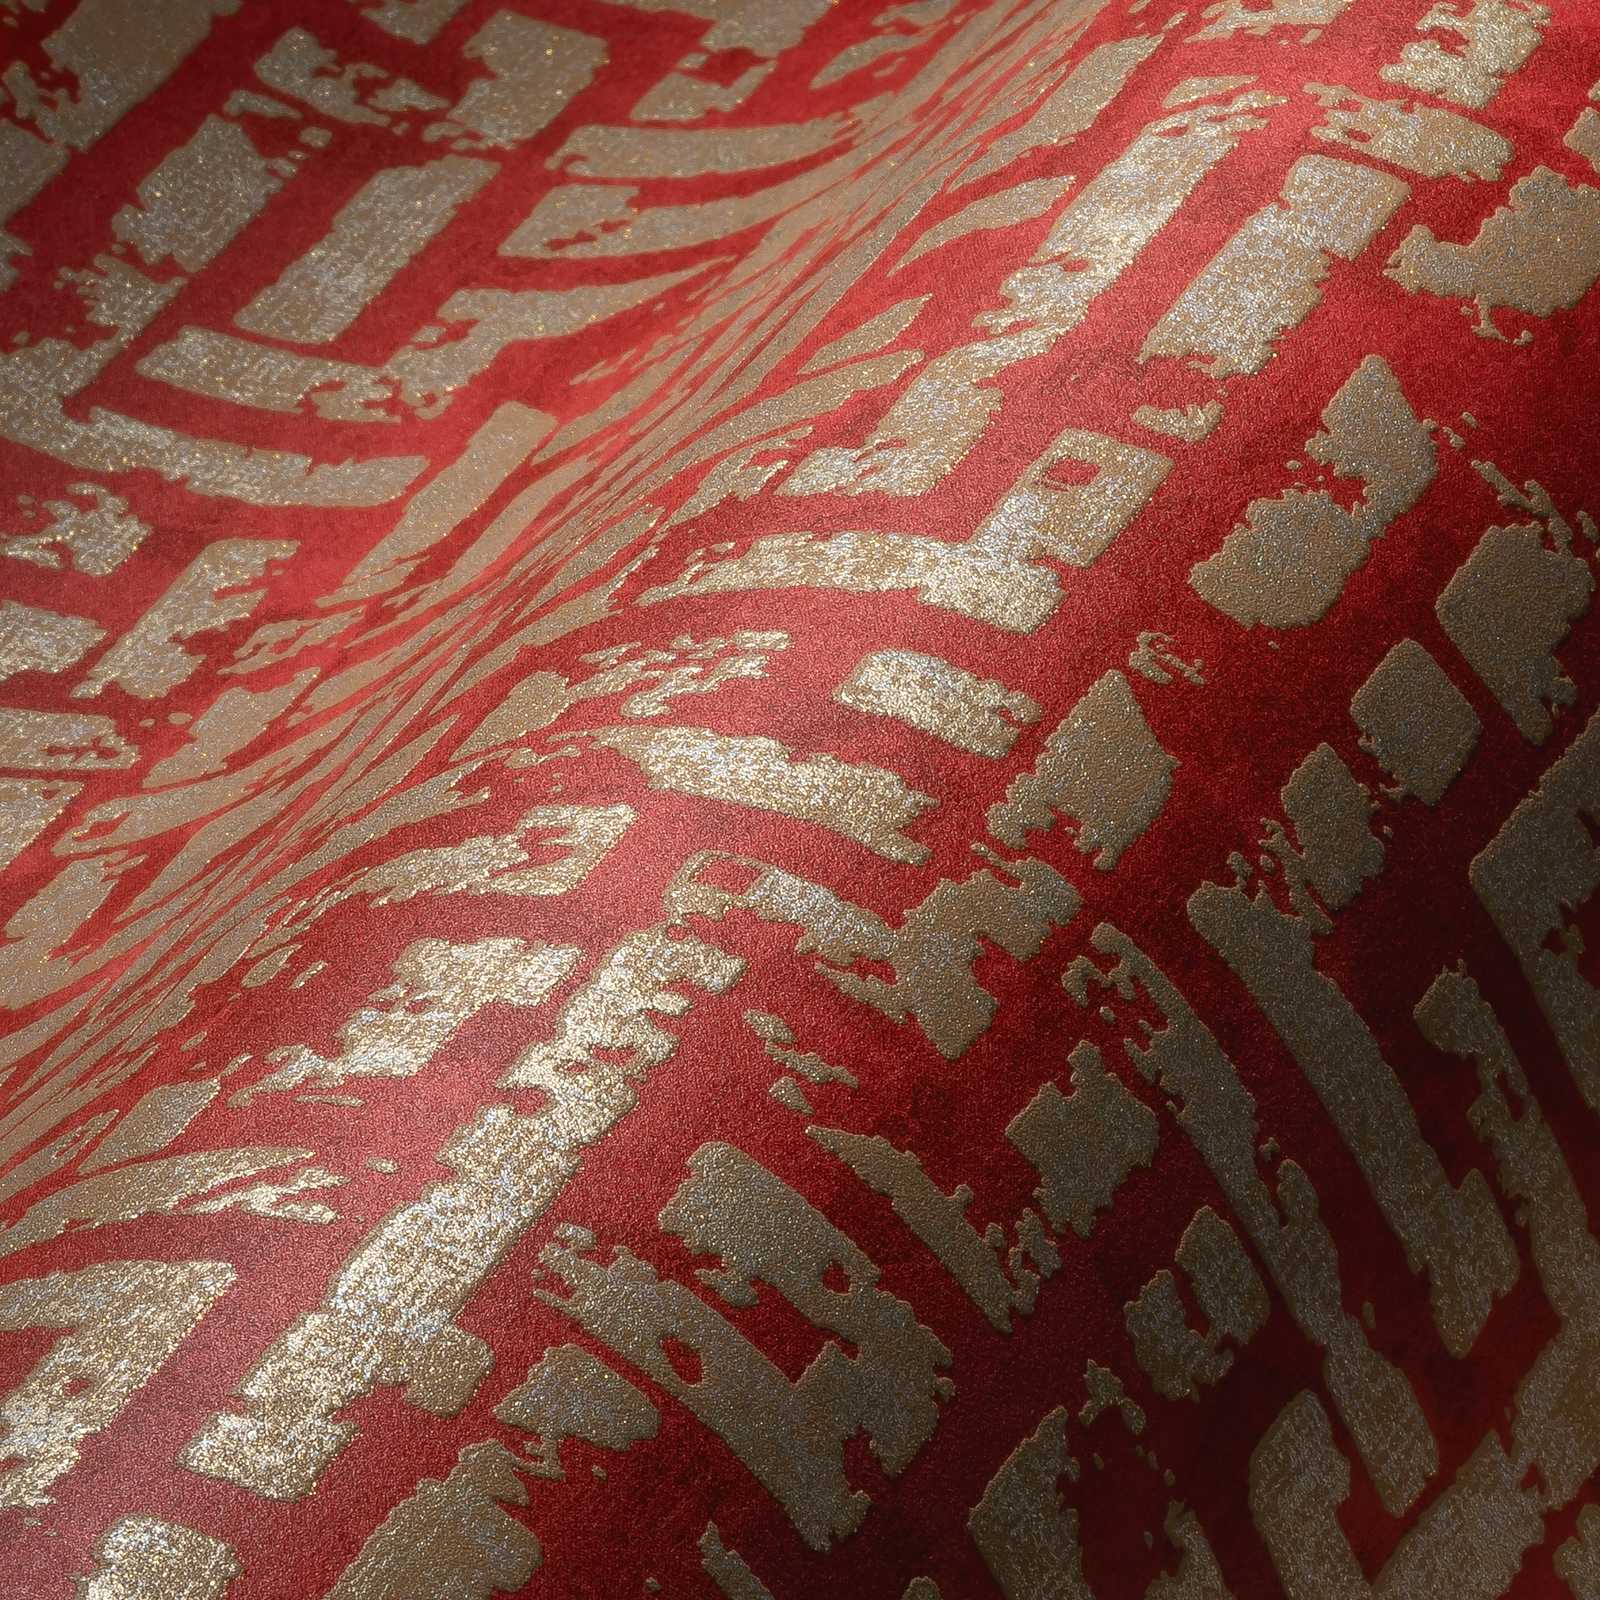             Behang rood-goud met grafisch patroon & used look - rood, metallic
        